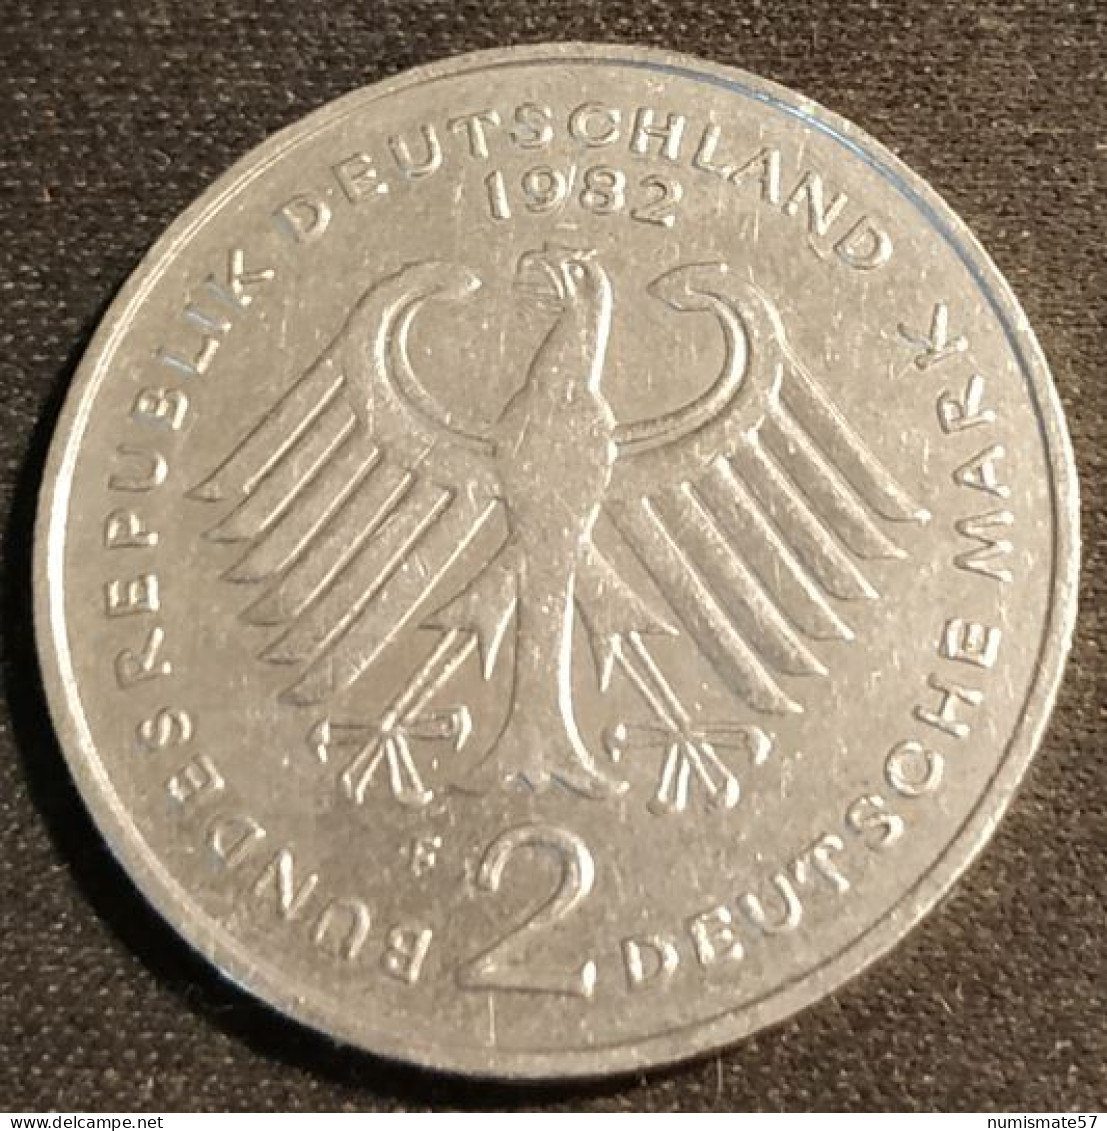 ALLEMAGNE - GERMANY - 2 DEUTSCHE MARK 1982 F - Konrad Adenauer - KM 124 - 2 Mark